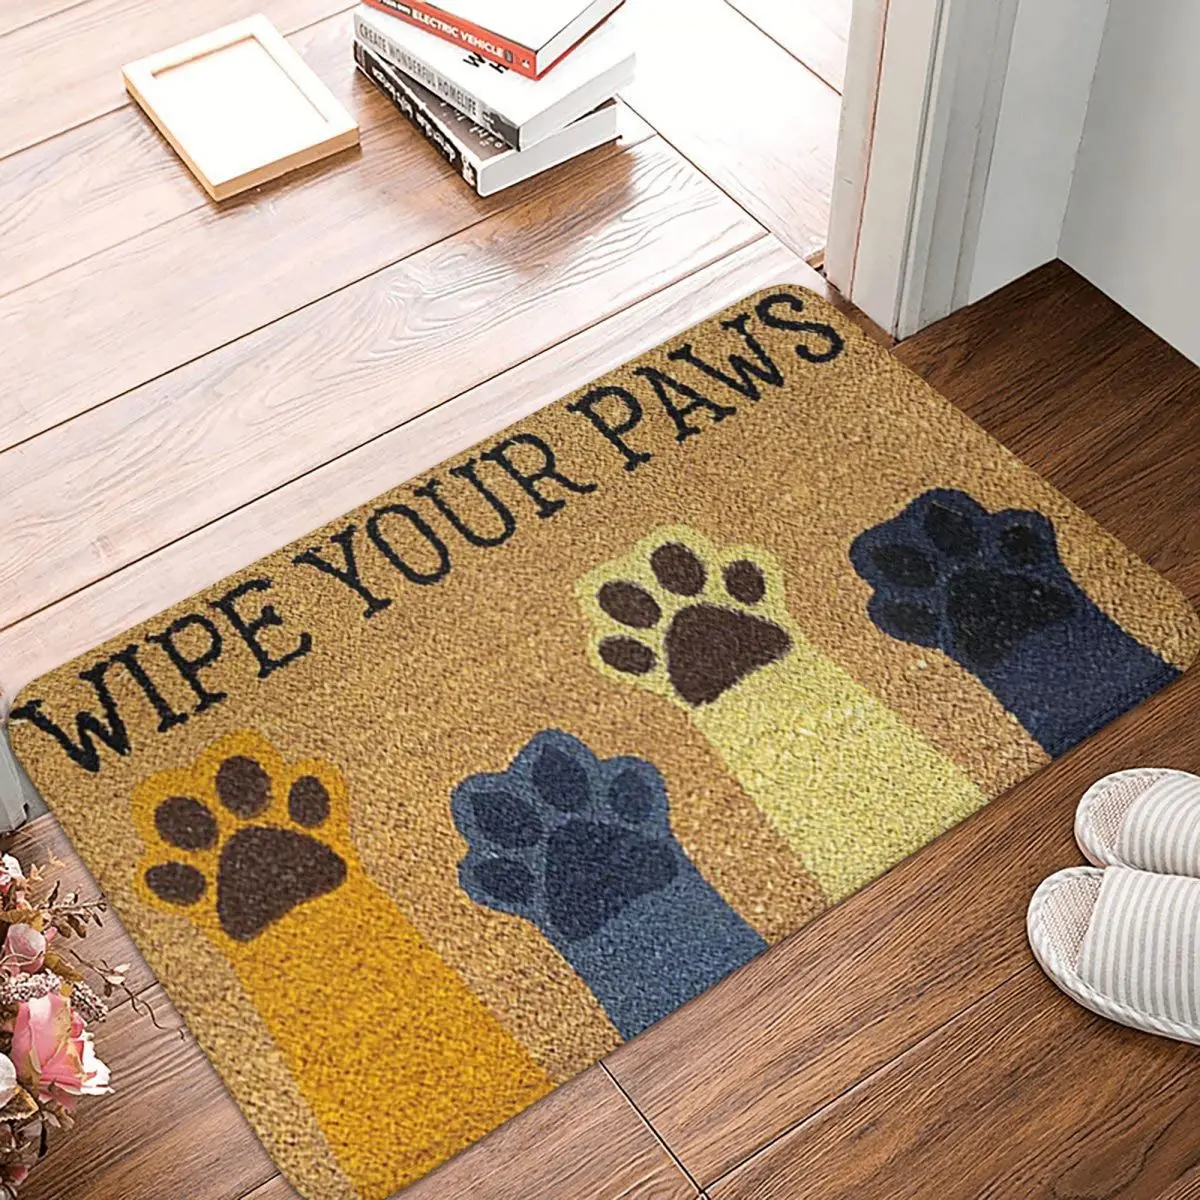 Cat Paw Wipe Your Paws Doormat Bedroom Rectangle Soft Living Room Home Mat Cute Animal Absorbent Floor Rug Door Mat Area Rugs